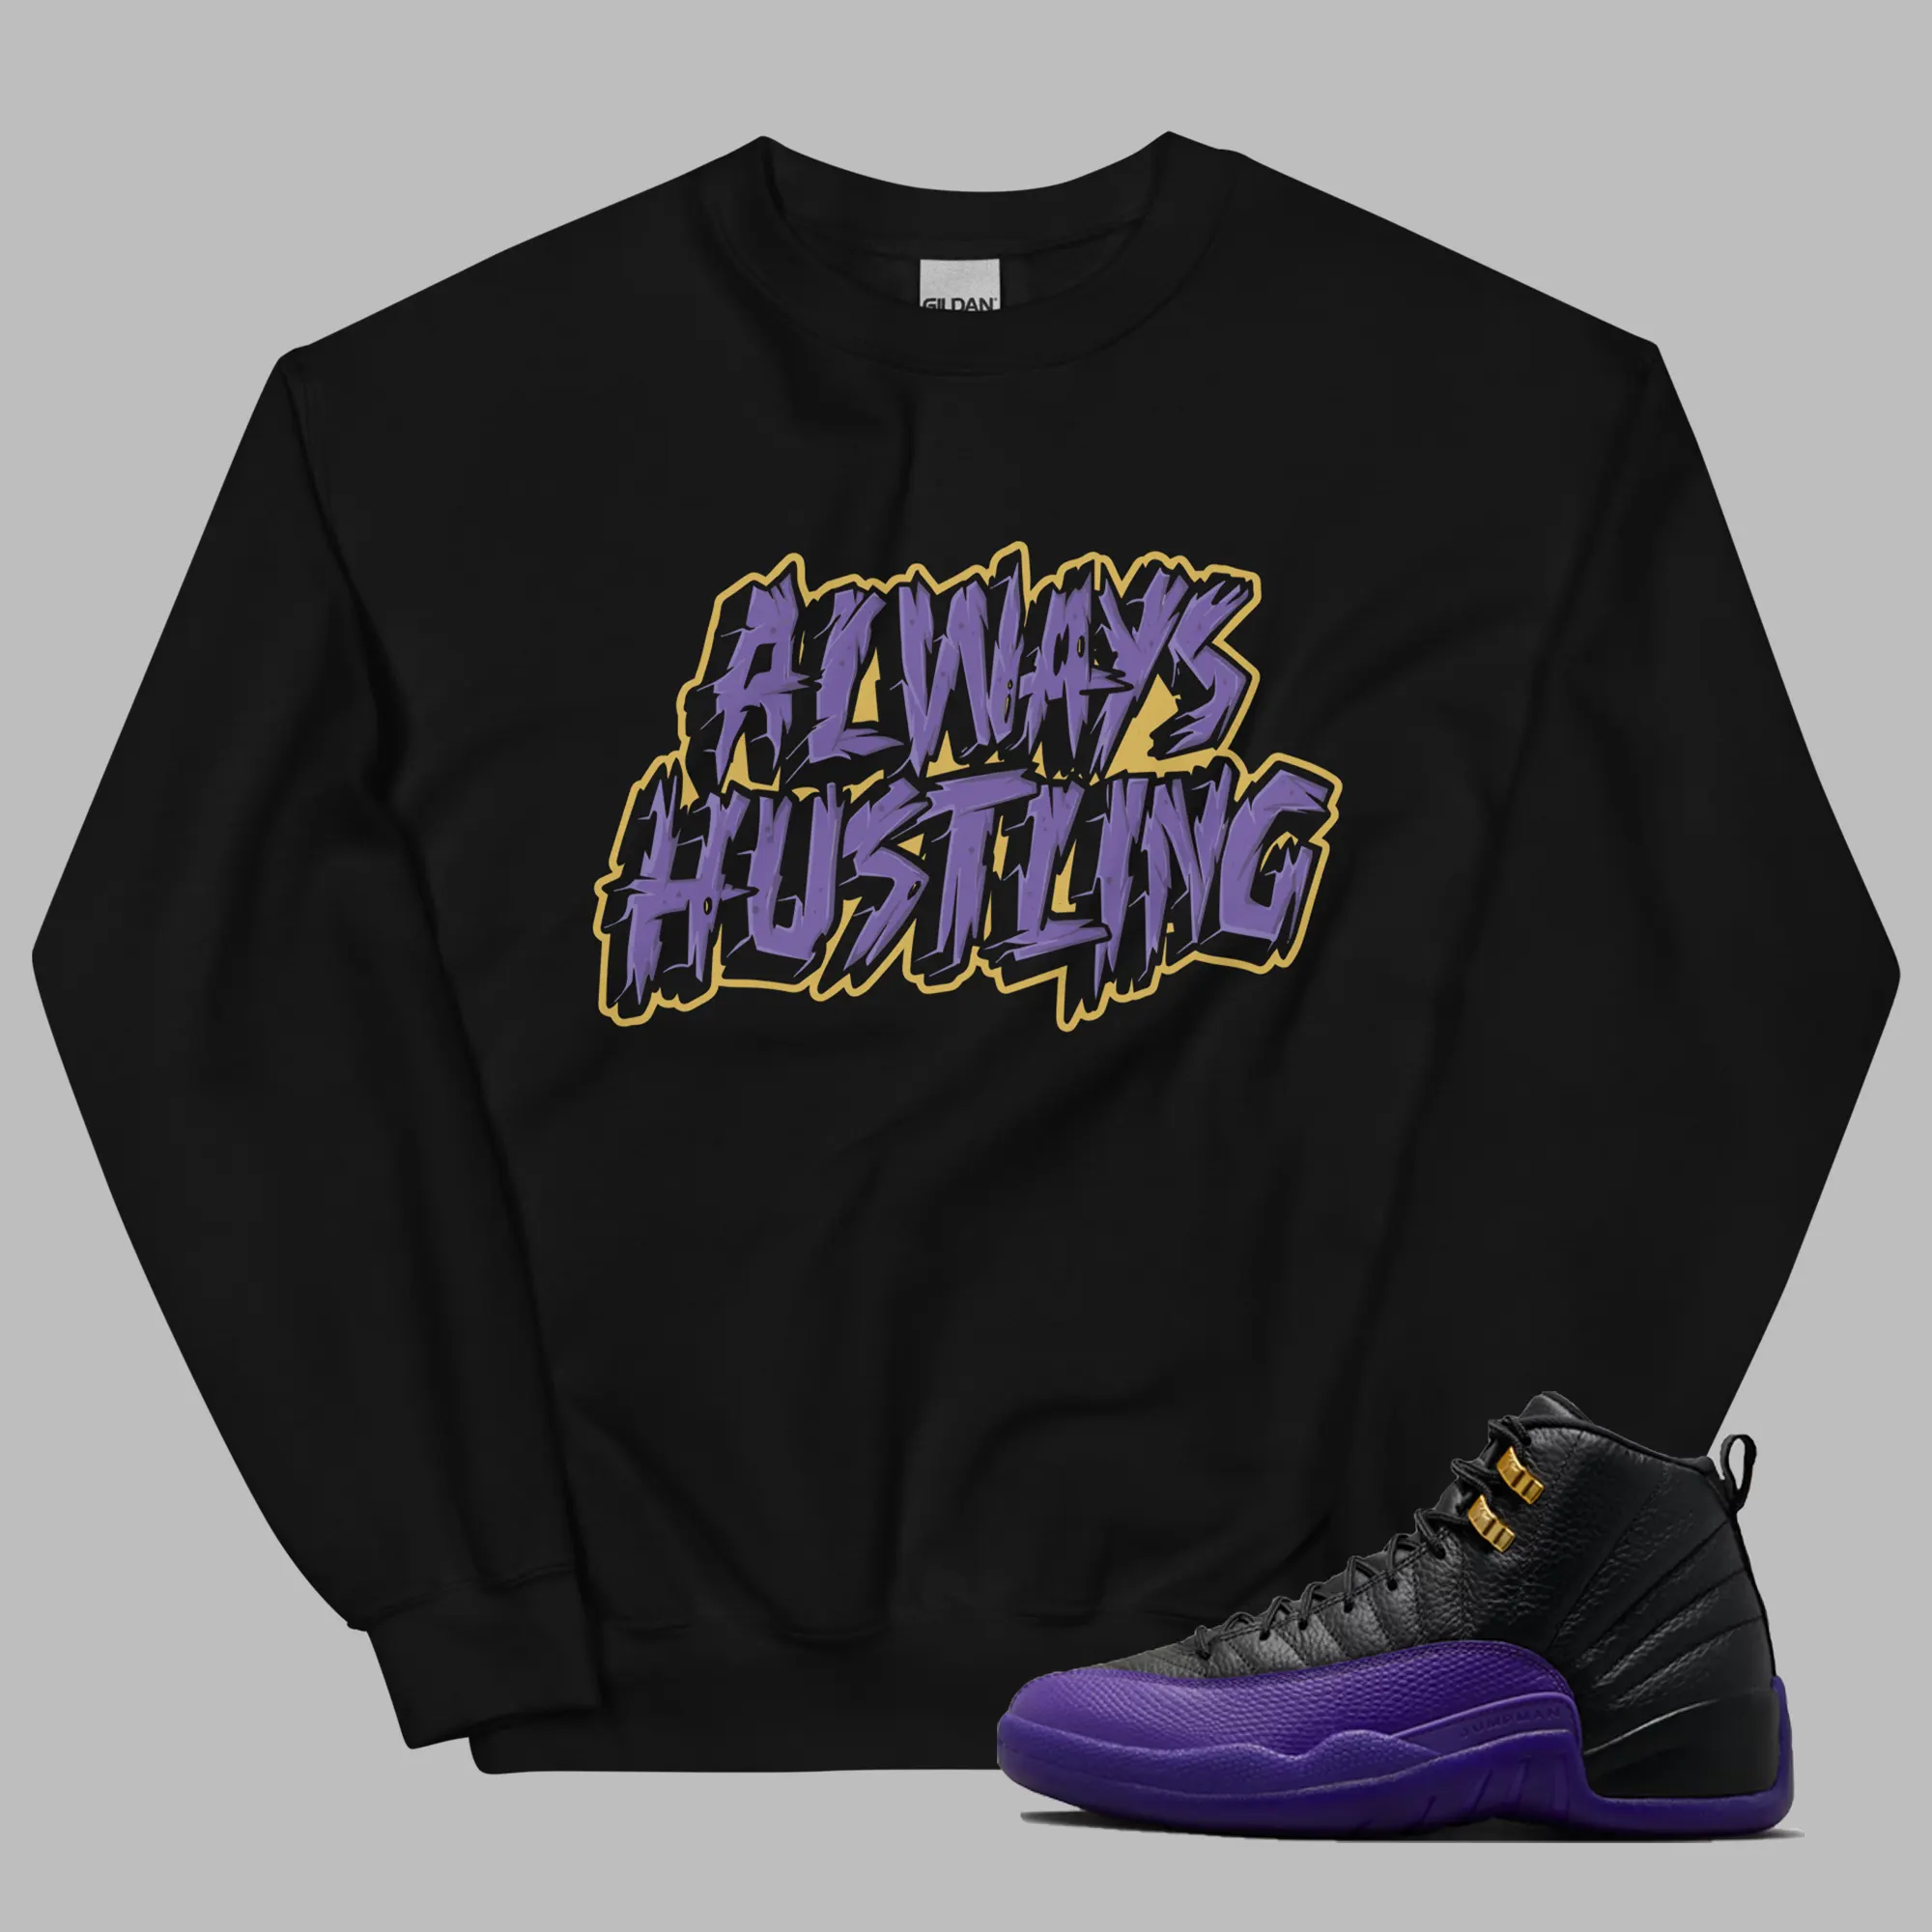 Jordan 12 Field Purple Sweatshirt Always Hustling Graphic Outfit